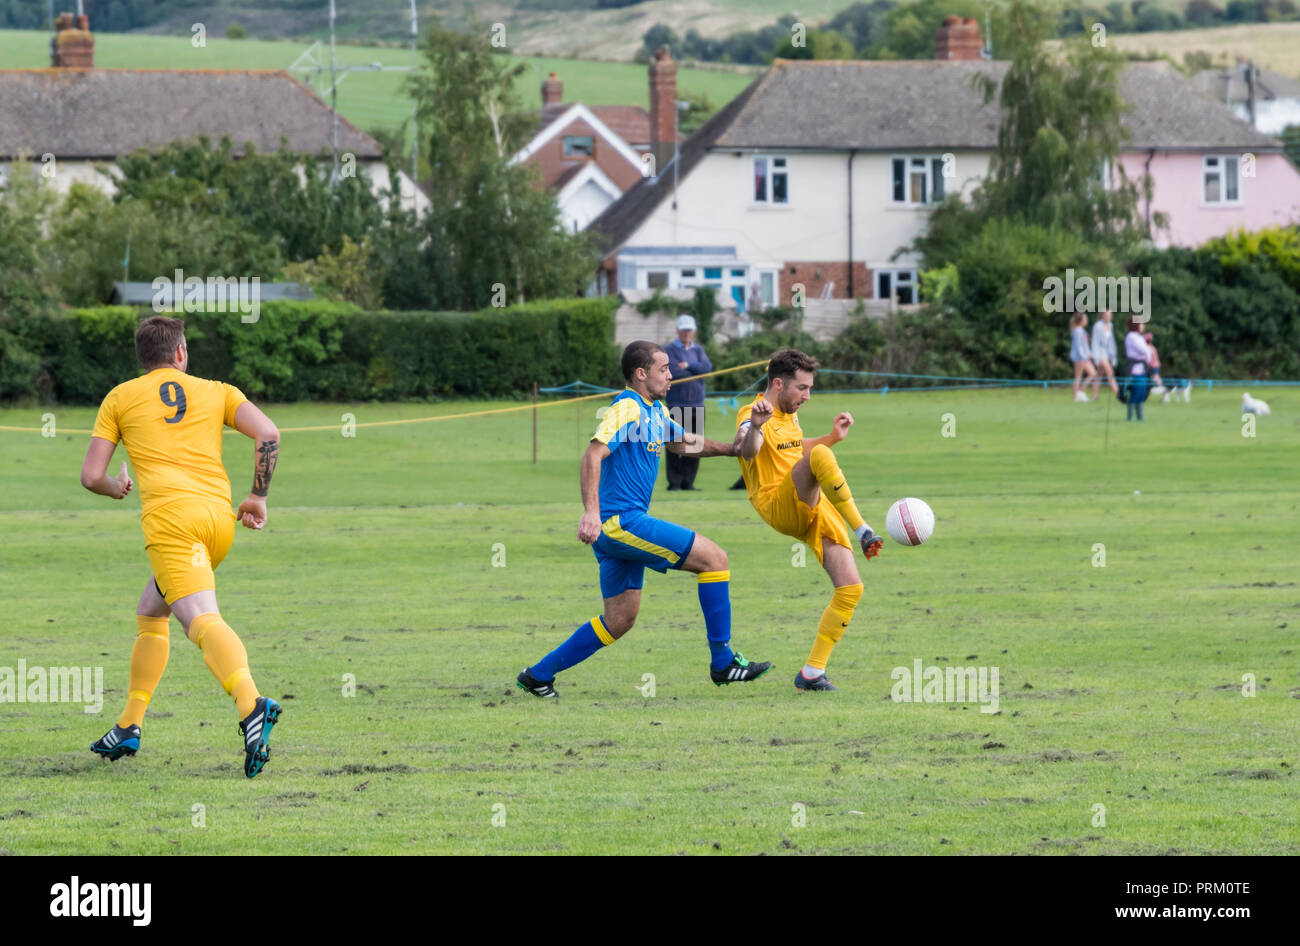 Die Spieler treten eine Kugel während einem Samstag liga Fußballspiel mit lokalen amateur Teams in West Sussex, England, UK. Stockfoto